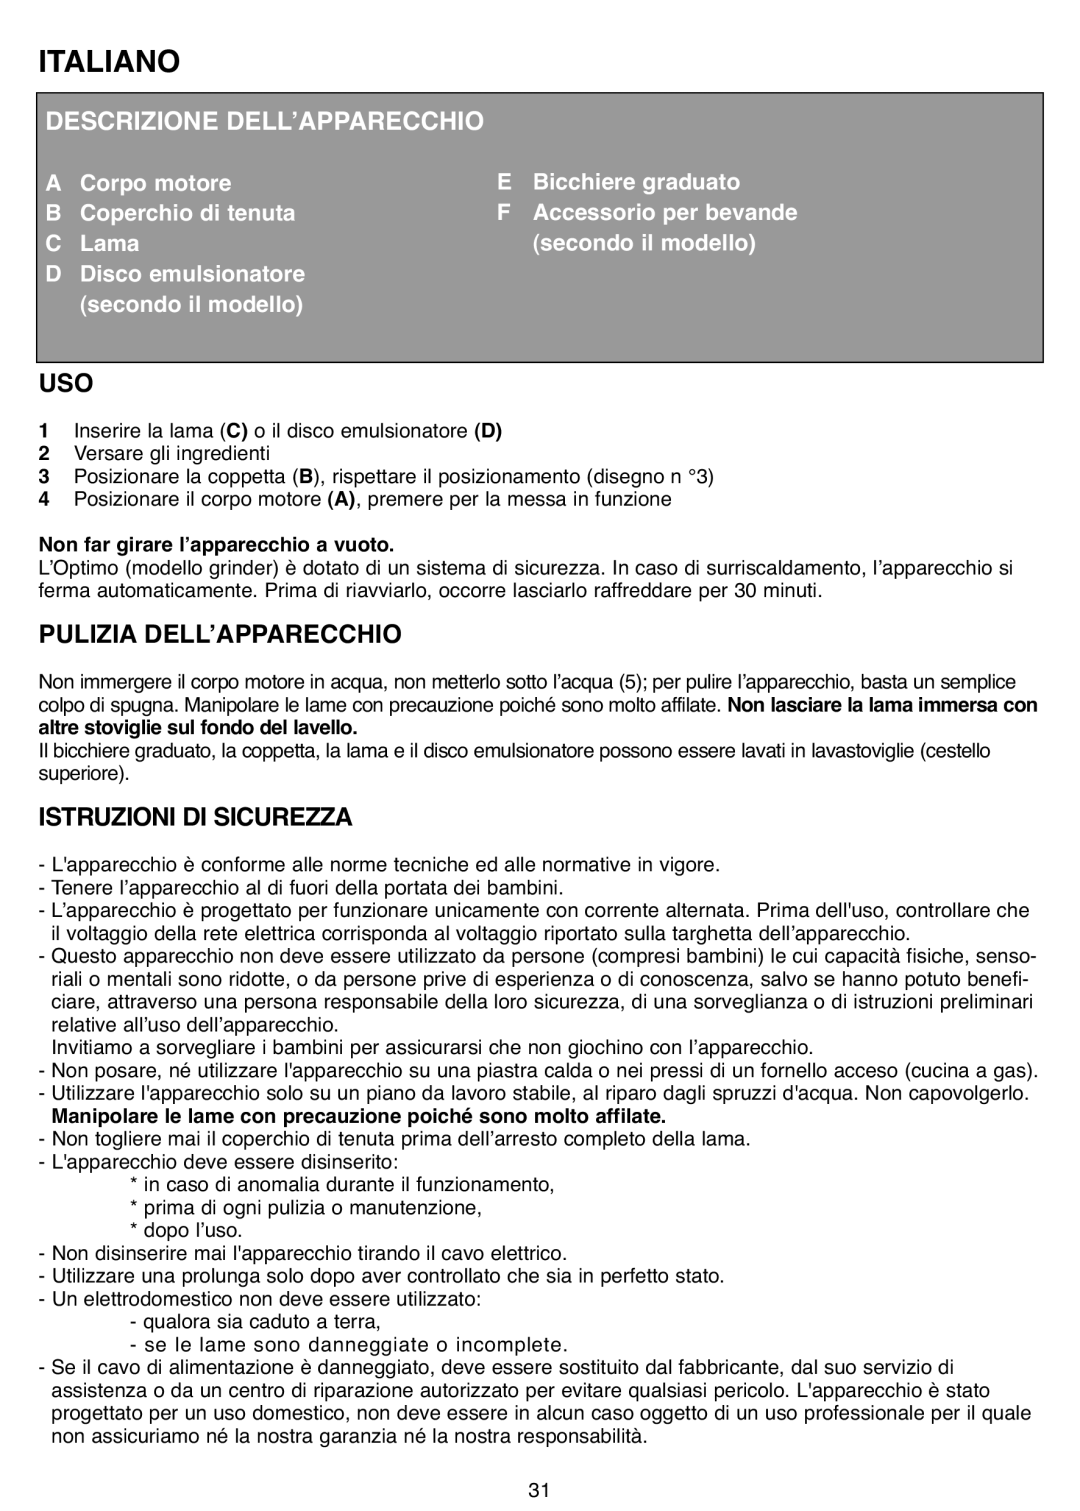 Tefal MB403444, MB403480 manual Italiano, Descrizione Dellʼapparecchio, Pulizia Dellʼapparecchio, Istruzioni Di Sicurezza 